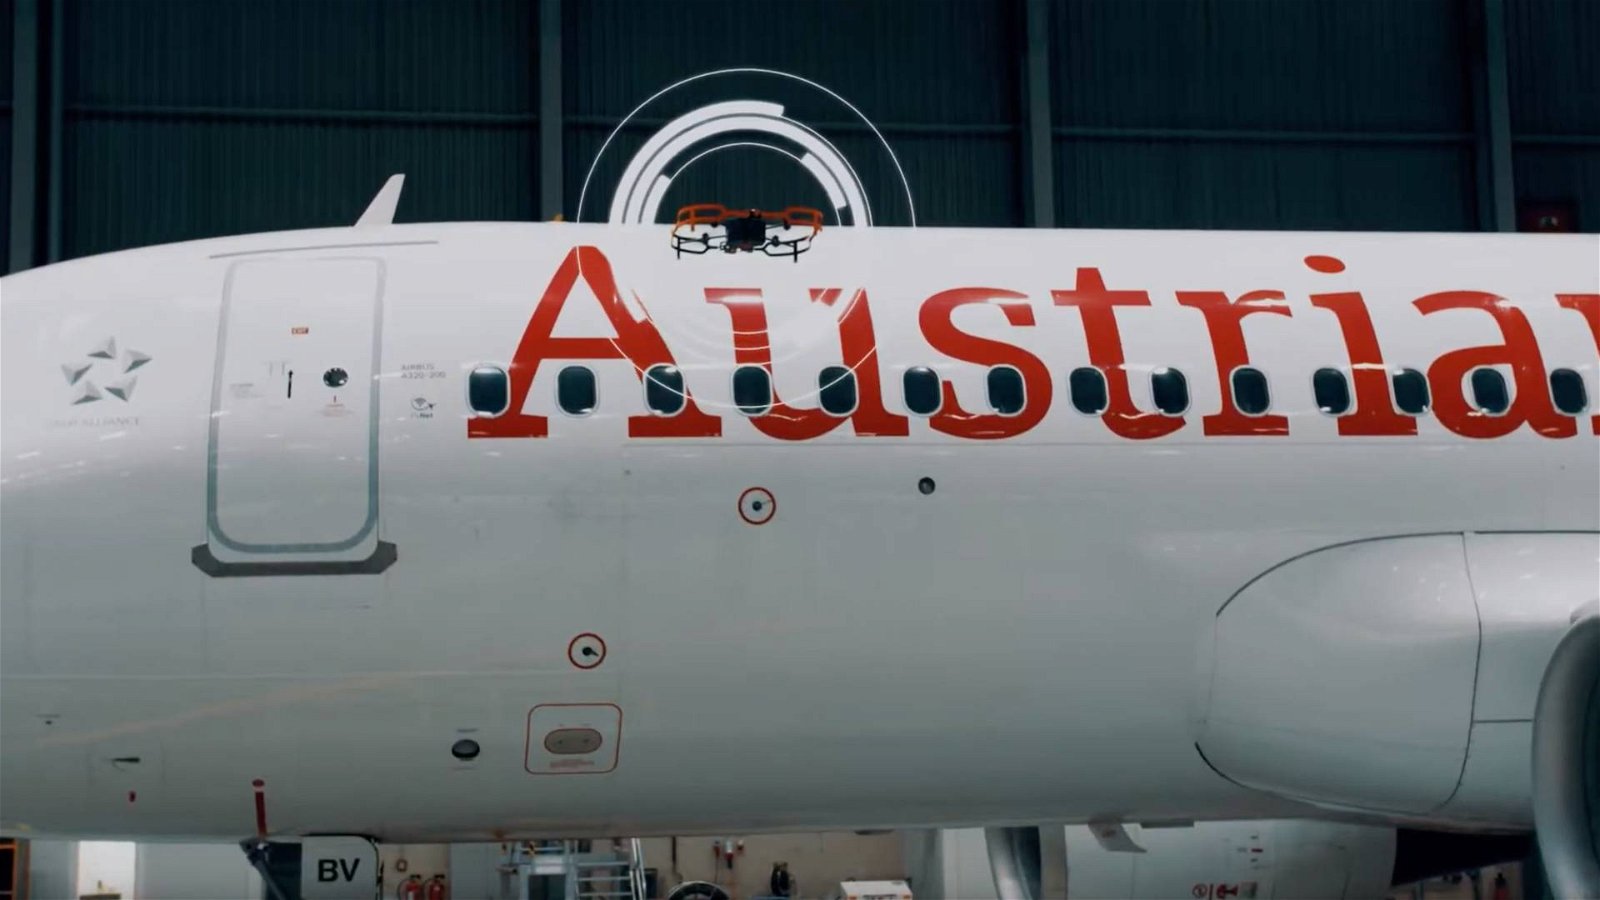 Immagine di Austrian Airlines, droni autonomi per l'ispezione di manutenzione dei velivoli